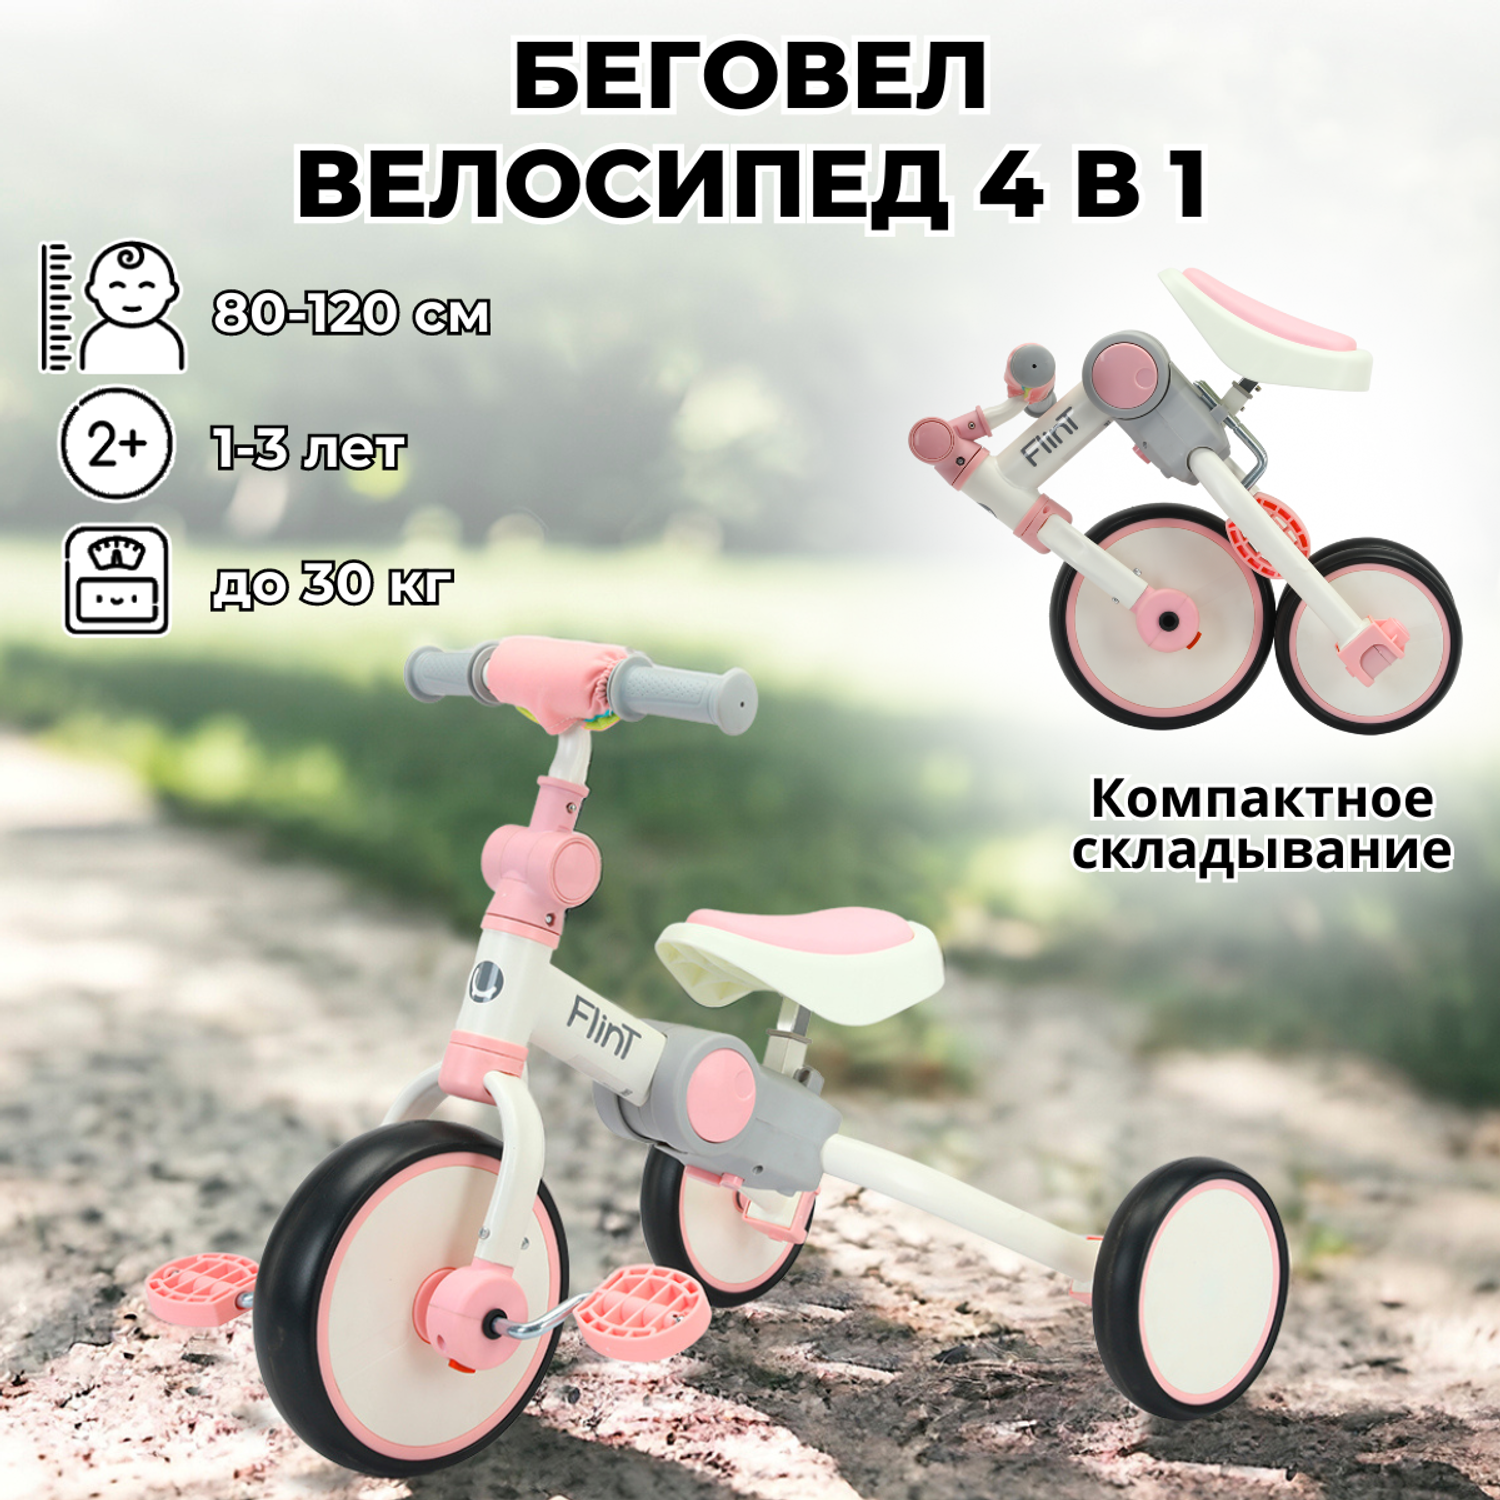 Беговел-велосипед 4в1 детский Bubago Flint бело-розовый - фото 1